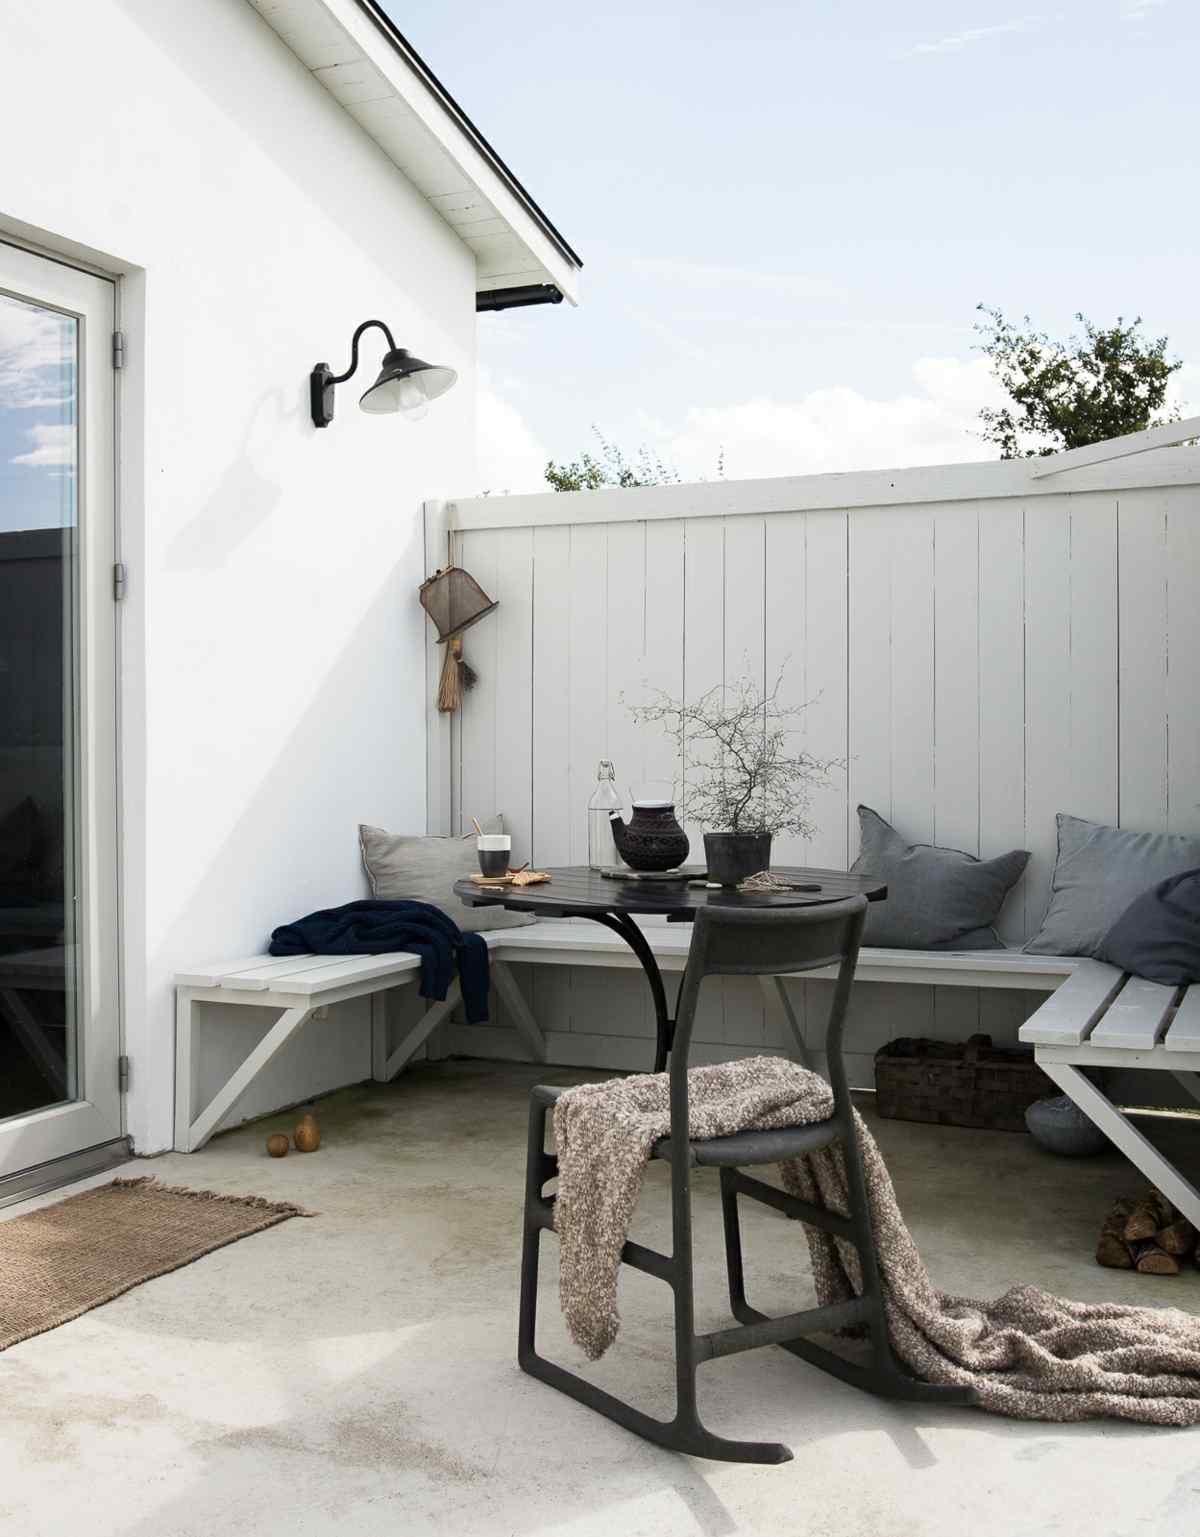 Outdoor-Bereich mit Beton Boden, eingebauter Sitzbank und skandinavischem Schaukelstuhl